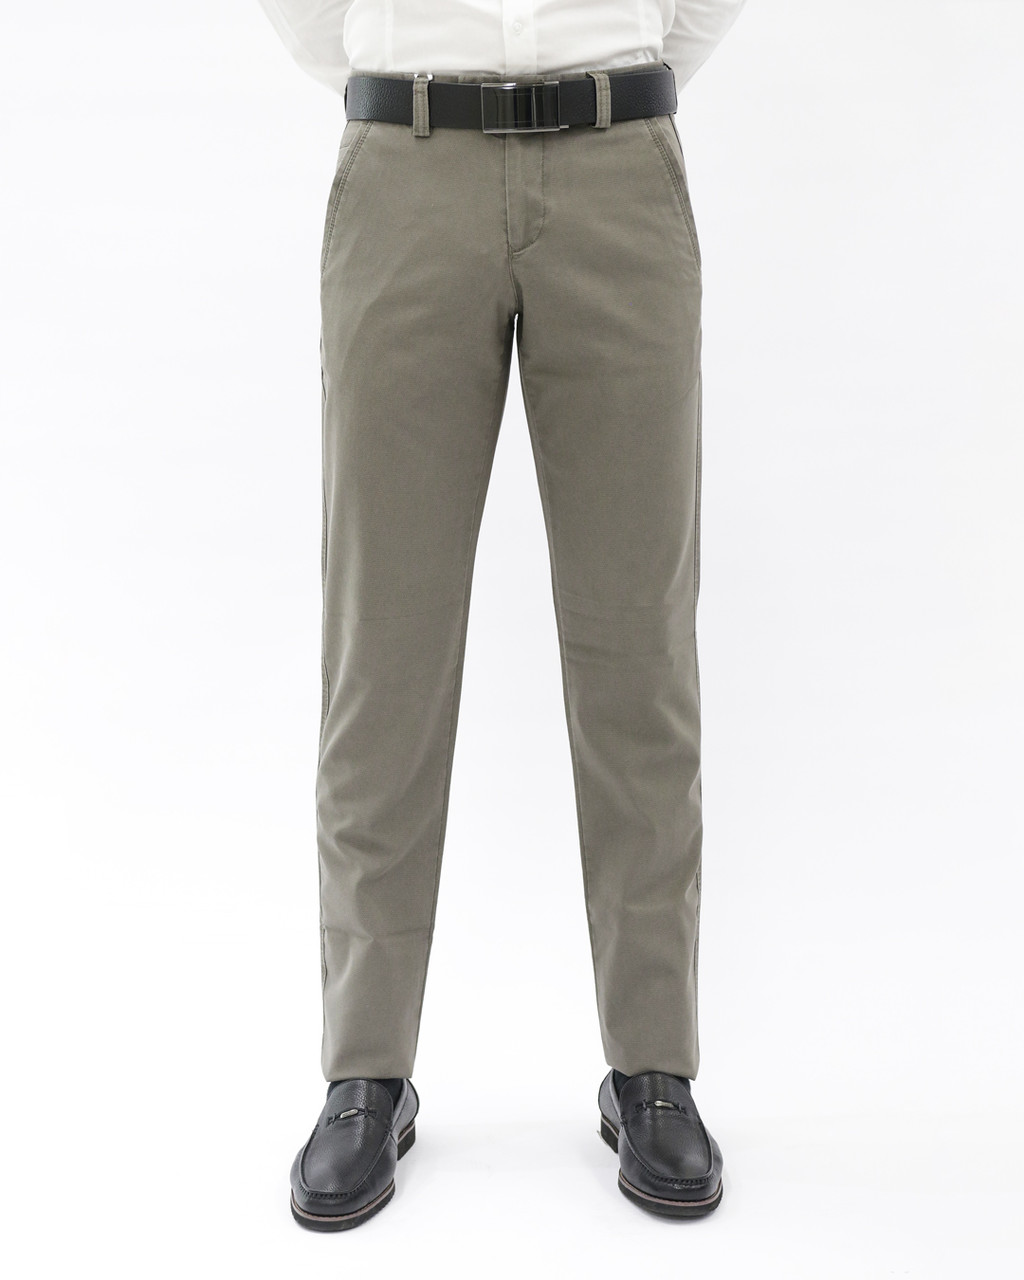 Мужские повседневные брюки «UM&H 554915779» коричневый, фото 1